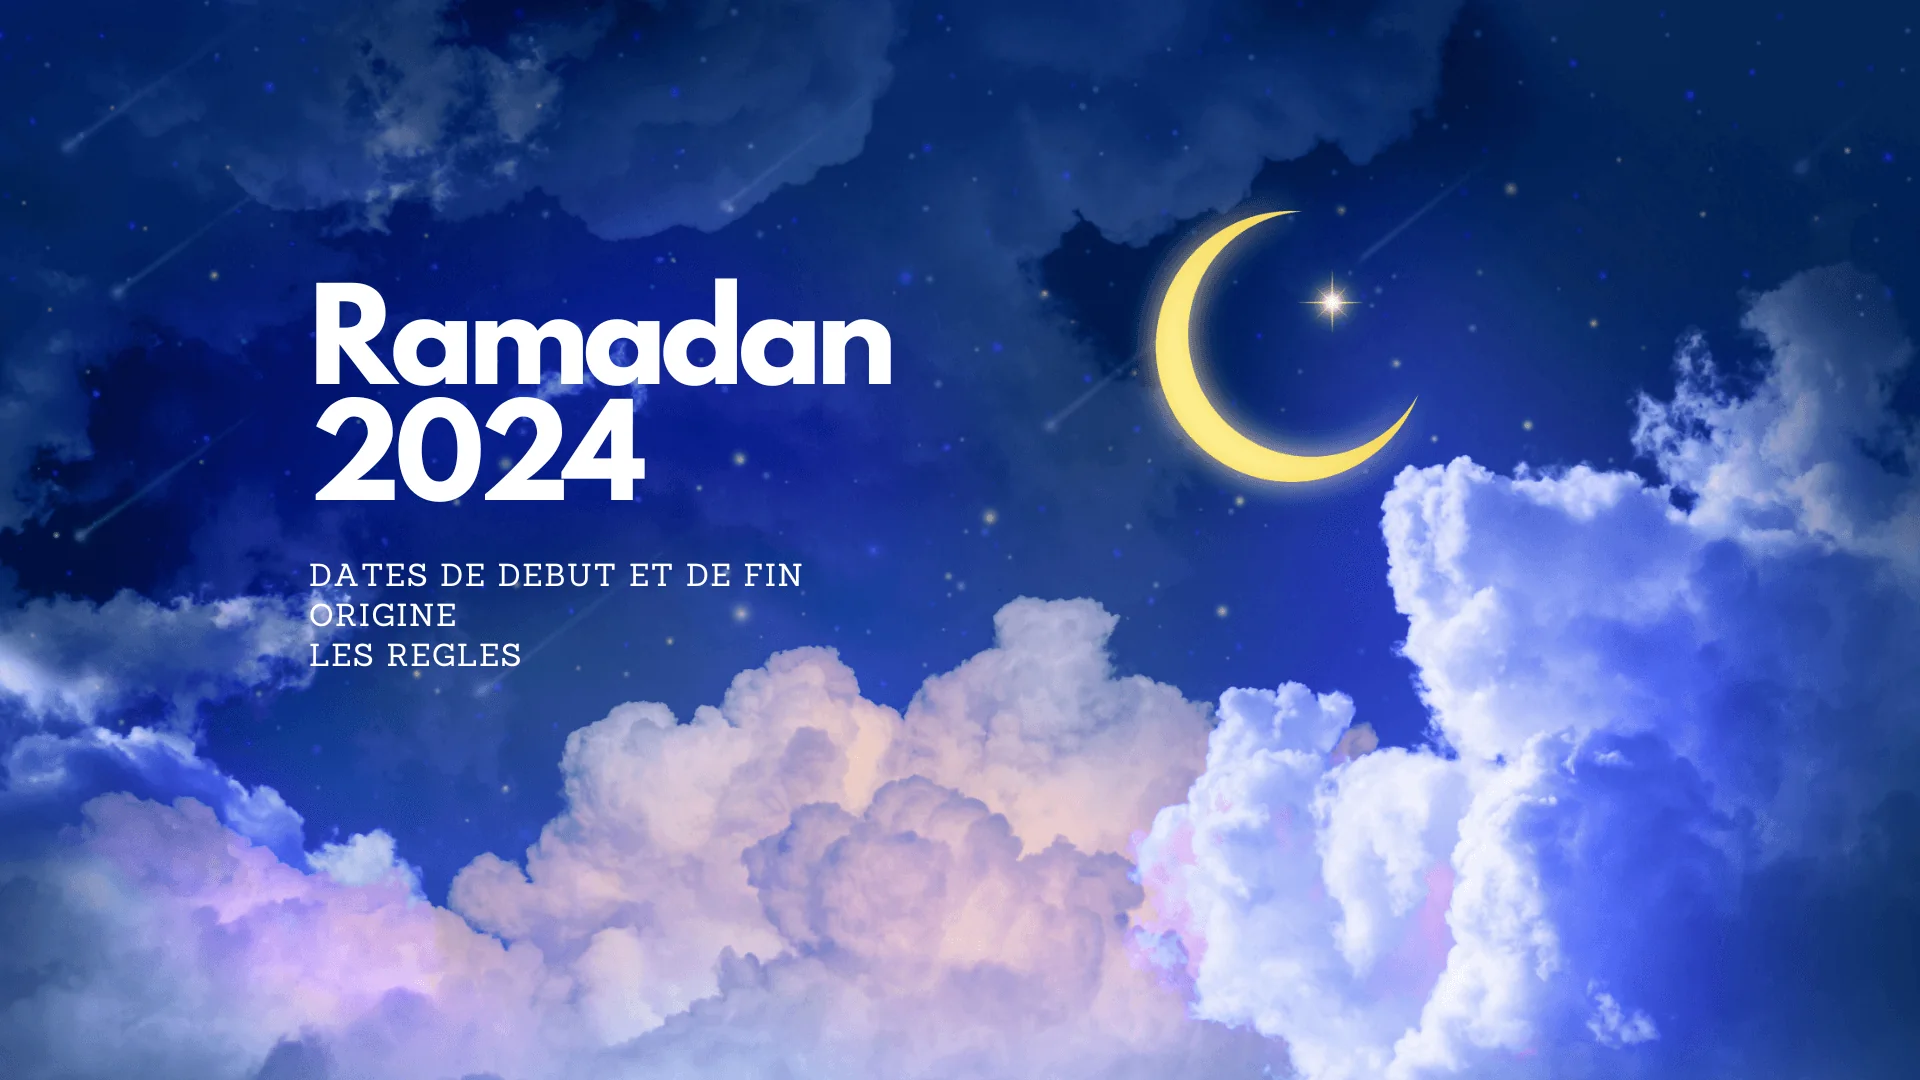 Ramadan 2024 en France : Dates officielles, origines, traditions et gastronomie